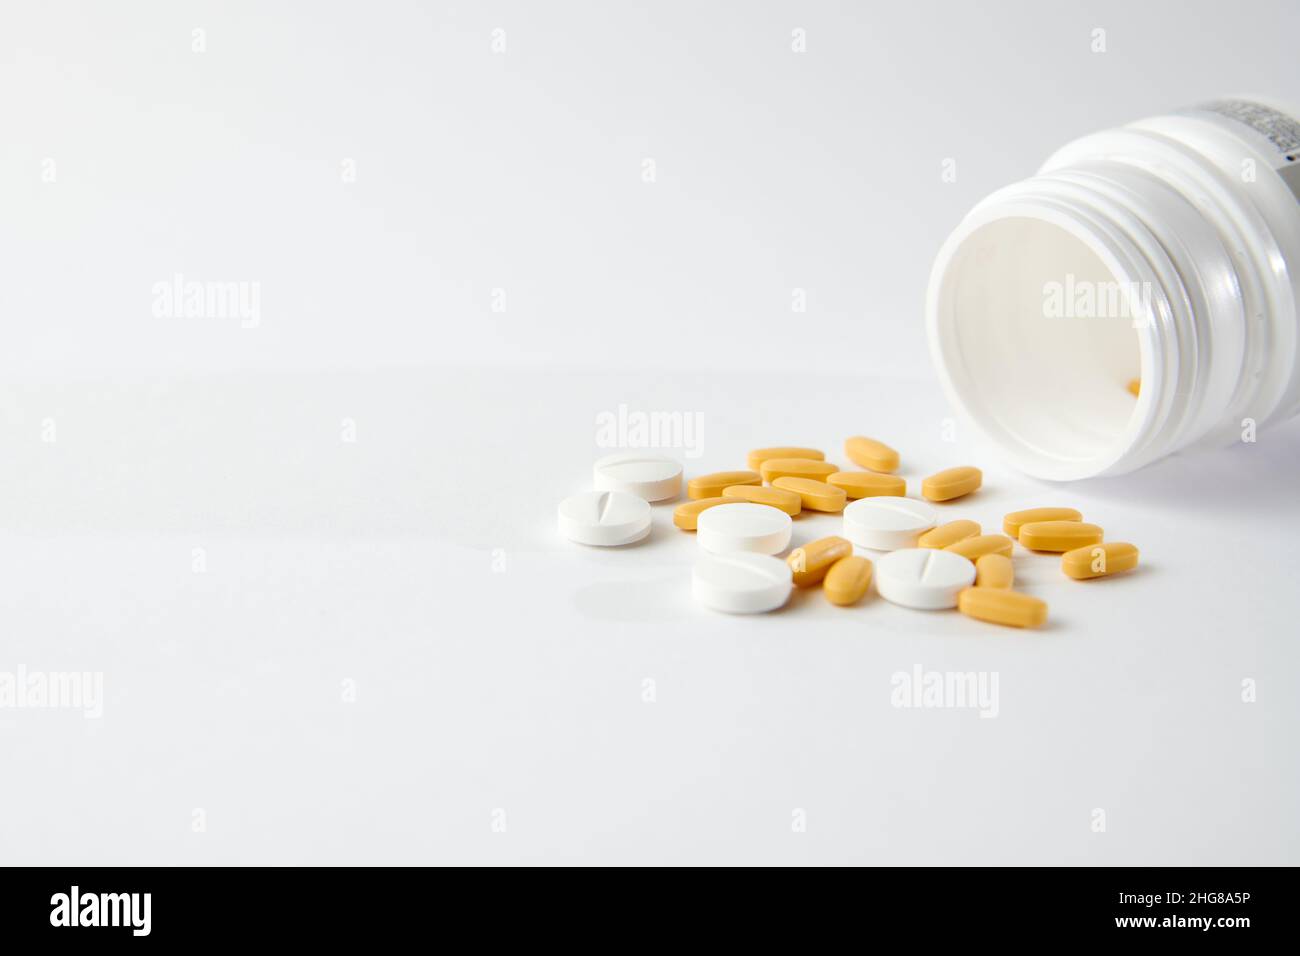 Un closeup di pillole bianche e gialle goccia fuori il flacone della pillola sulla superficie bianca Foto Stock